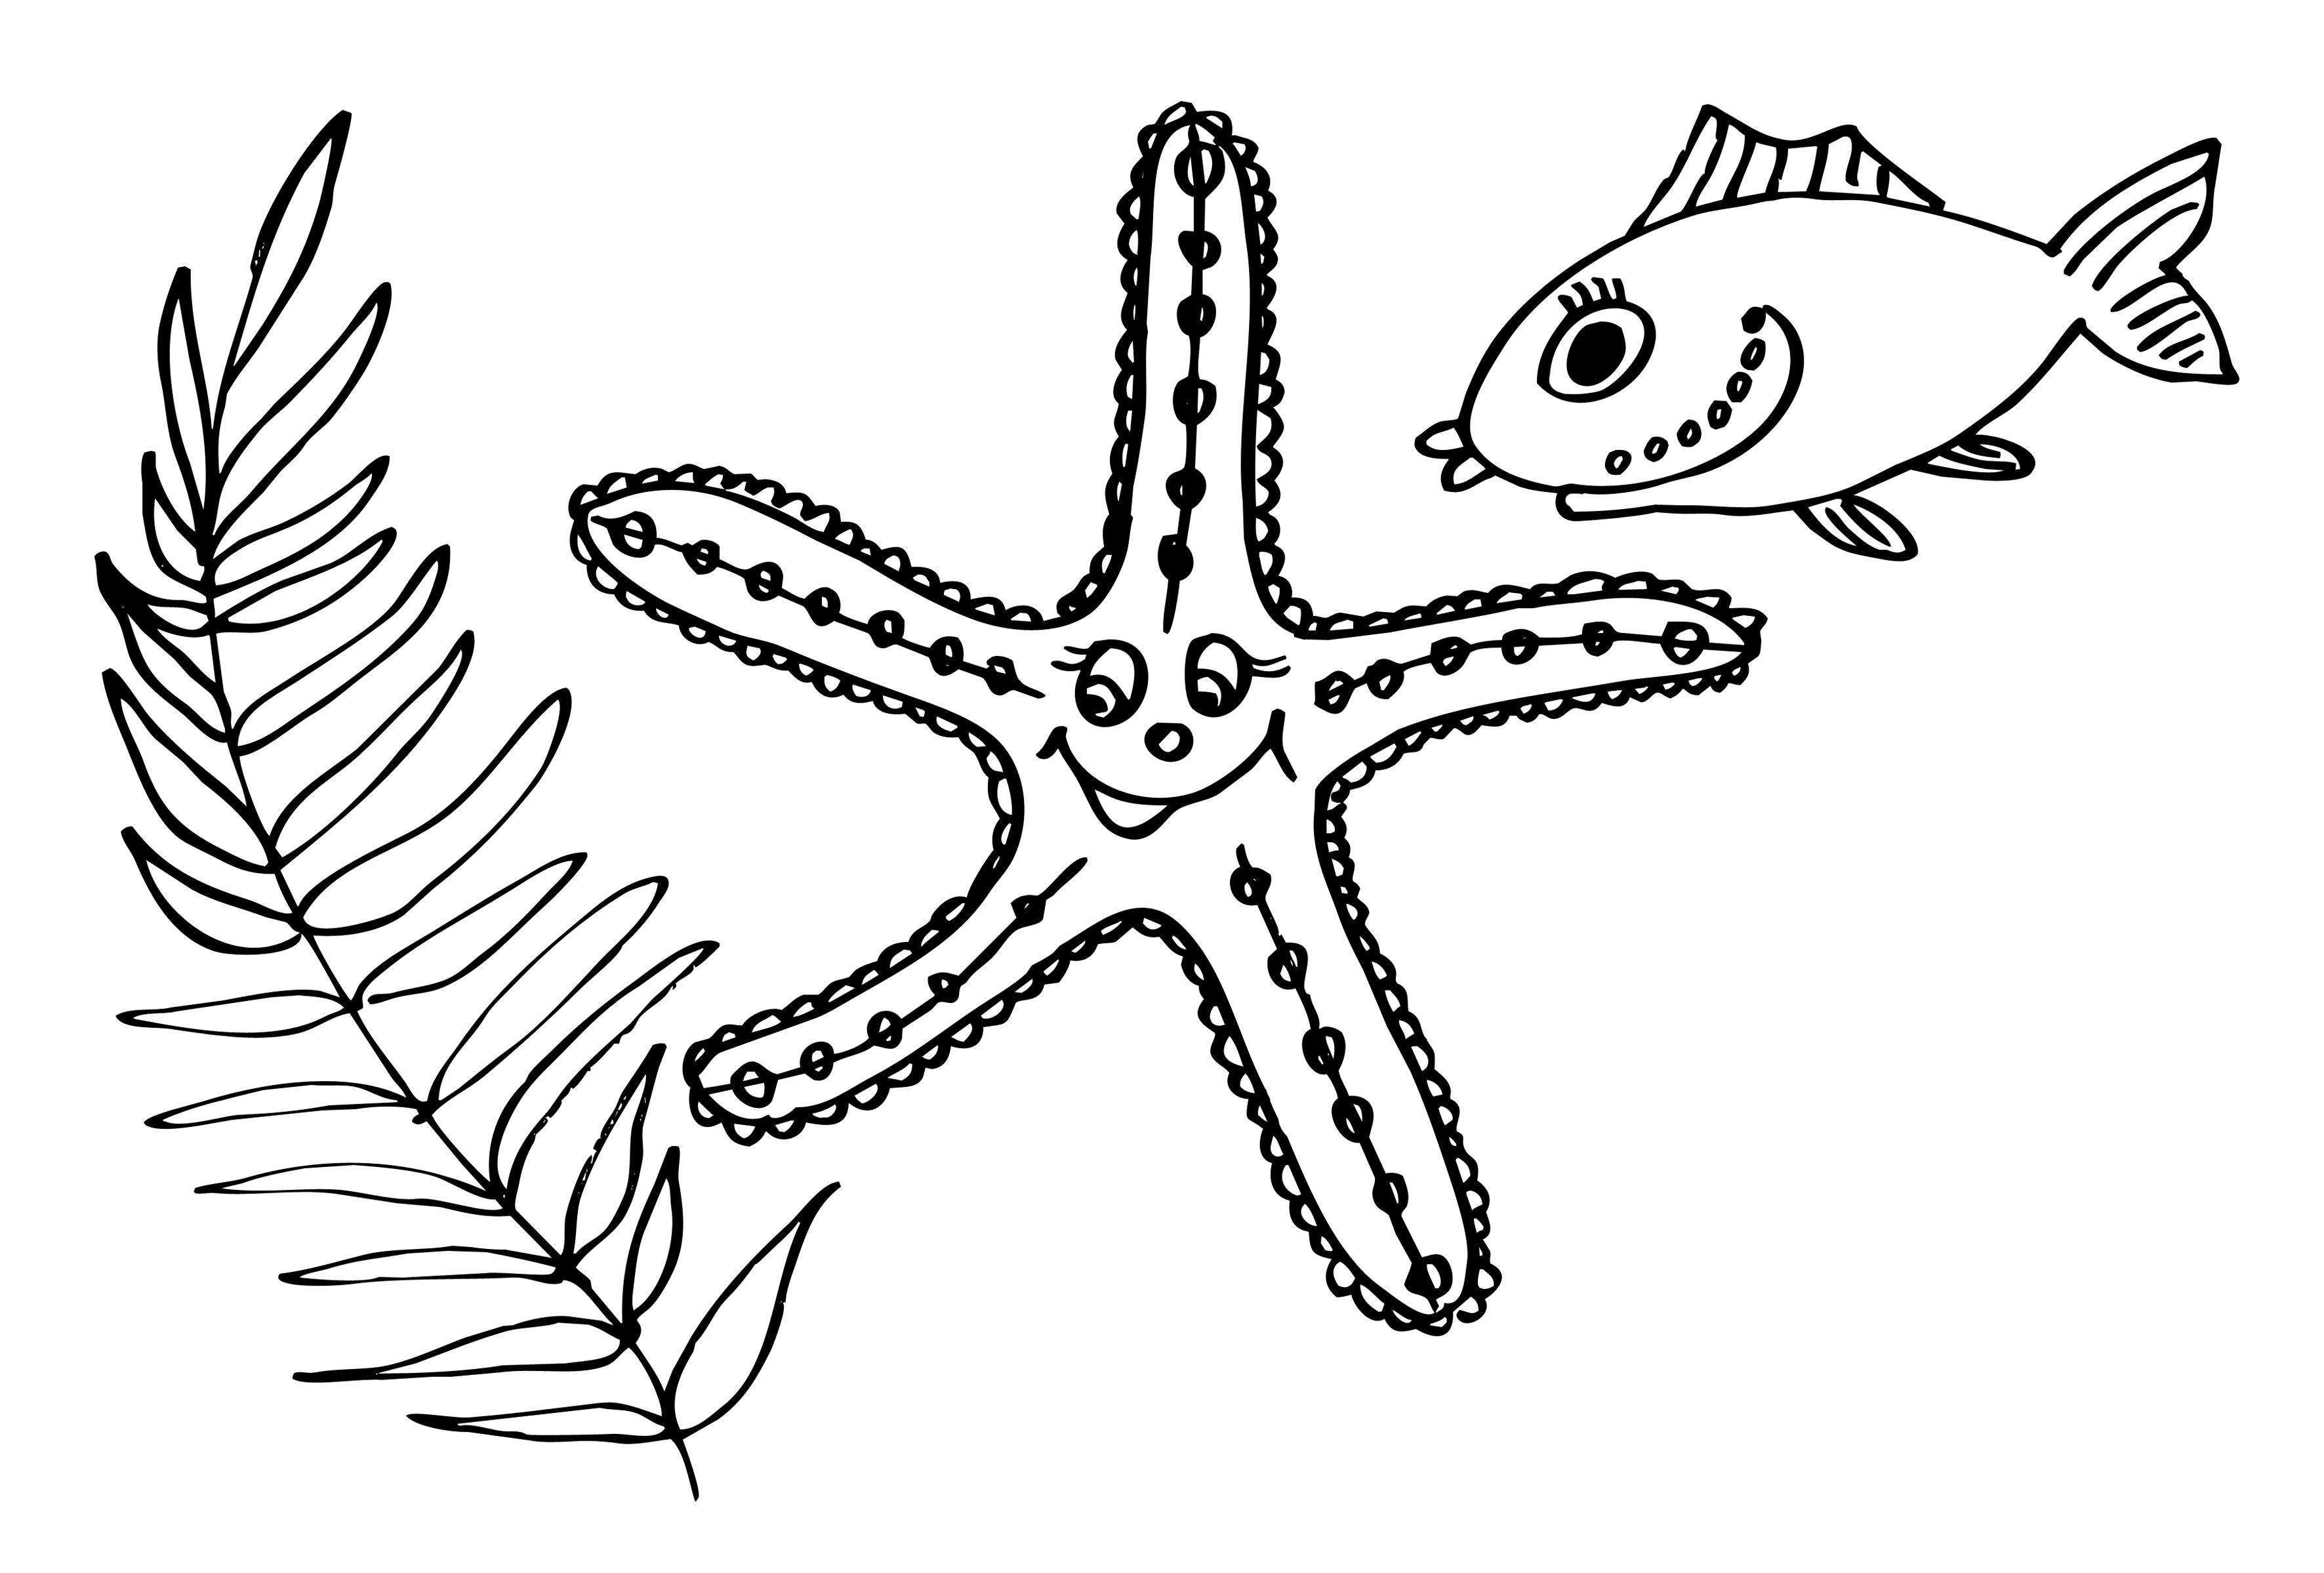   Водоросль, морская звезда и рыбка